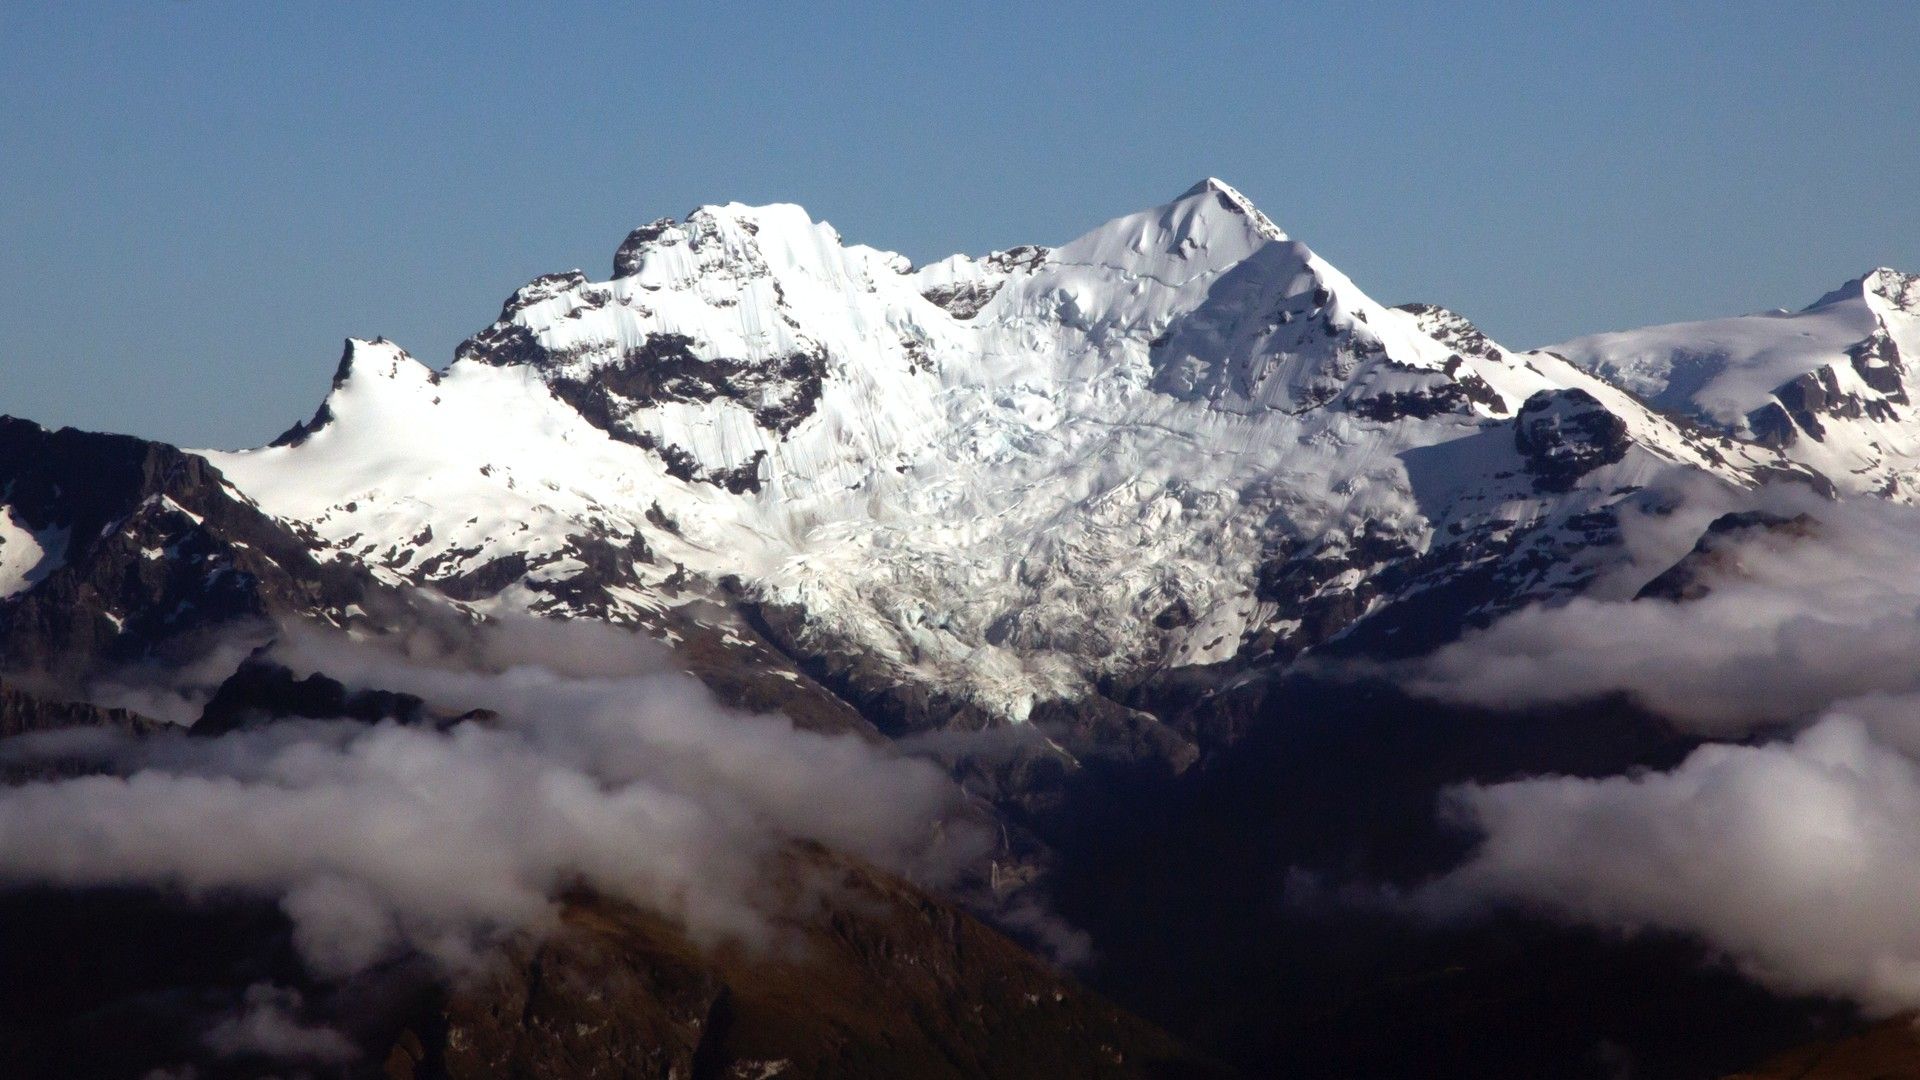 陡峭的山峰与雄壮雪山组成绝美自然风光大图